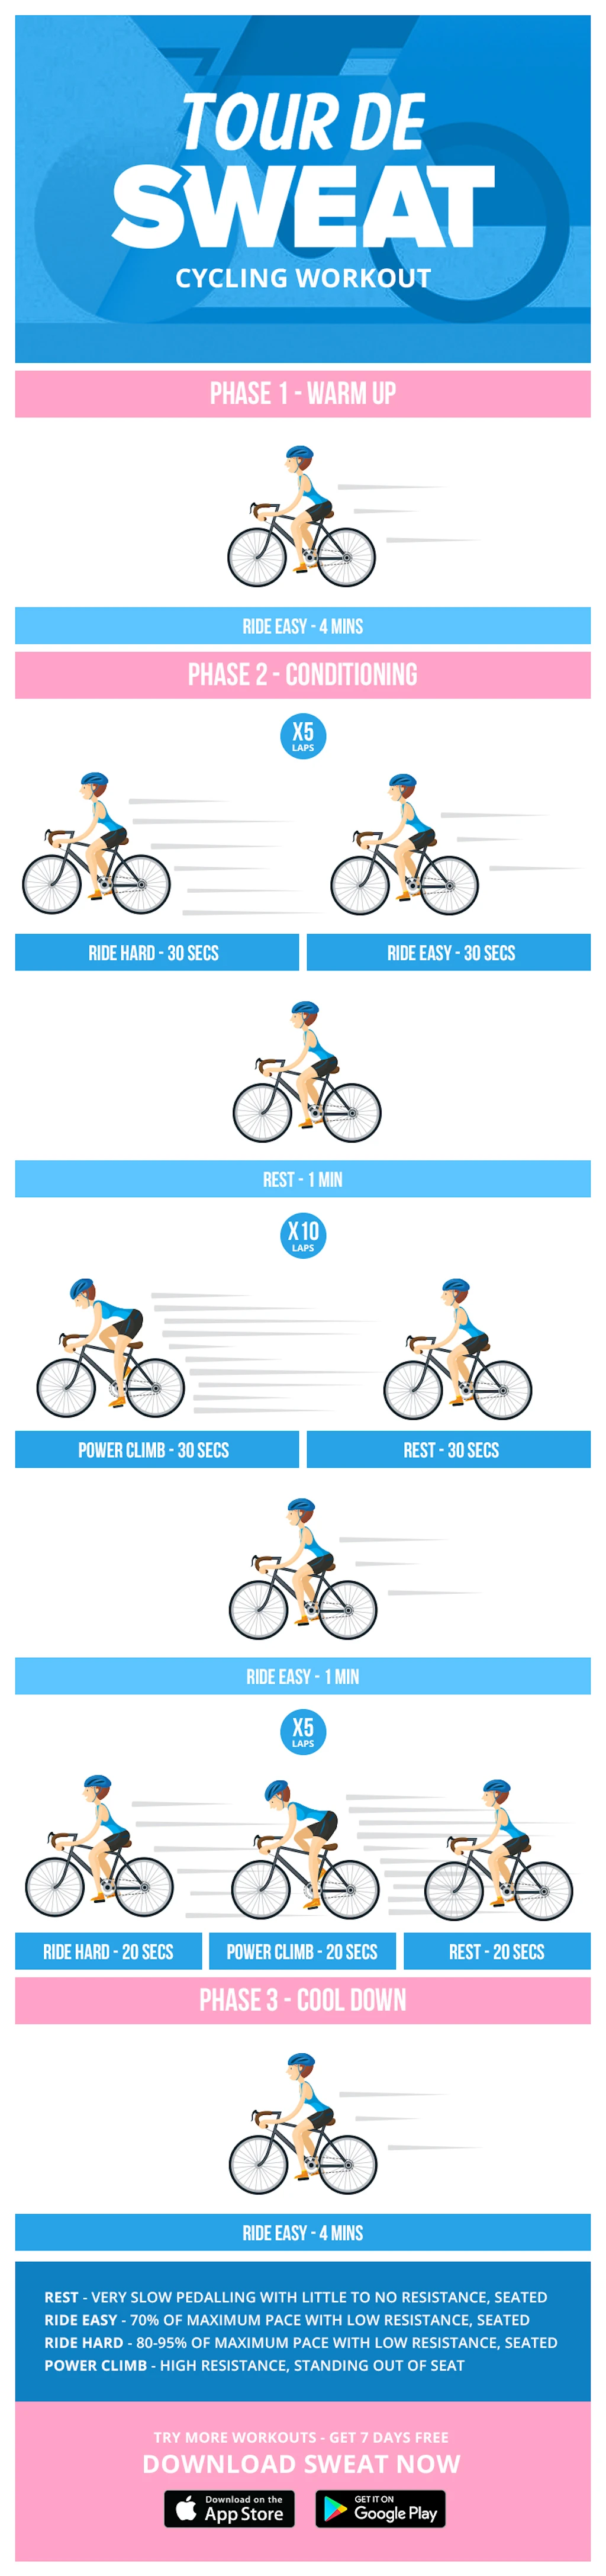 Celebrate Tour De France with this Tour De Sweat Cycling Workout - Picture Panel 2 - Desktop